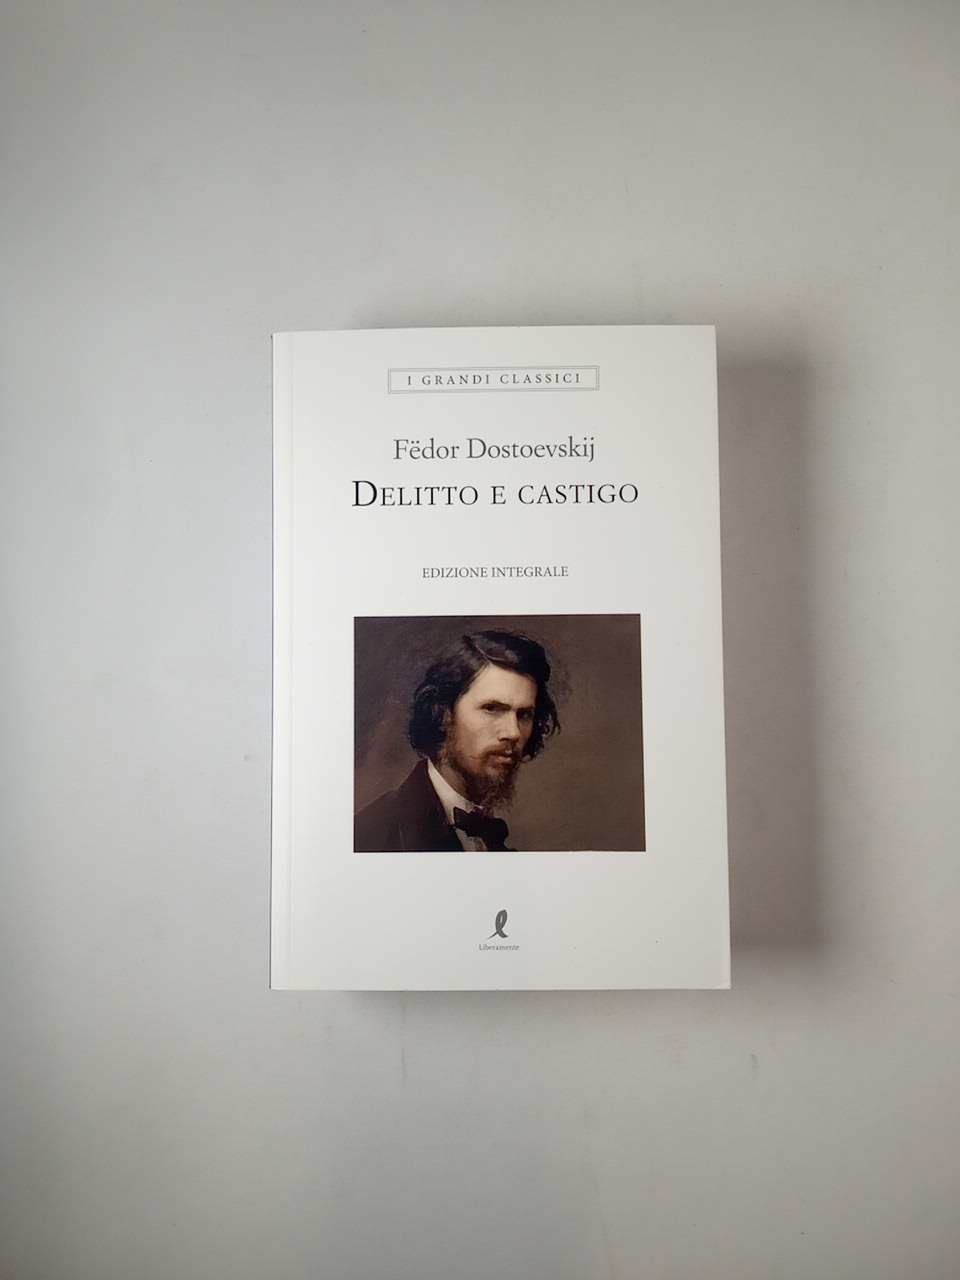 Delitto e castigo, il capolavoro di Dostoevskij che ci parla